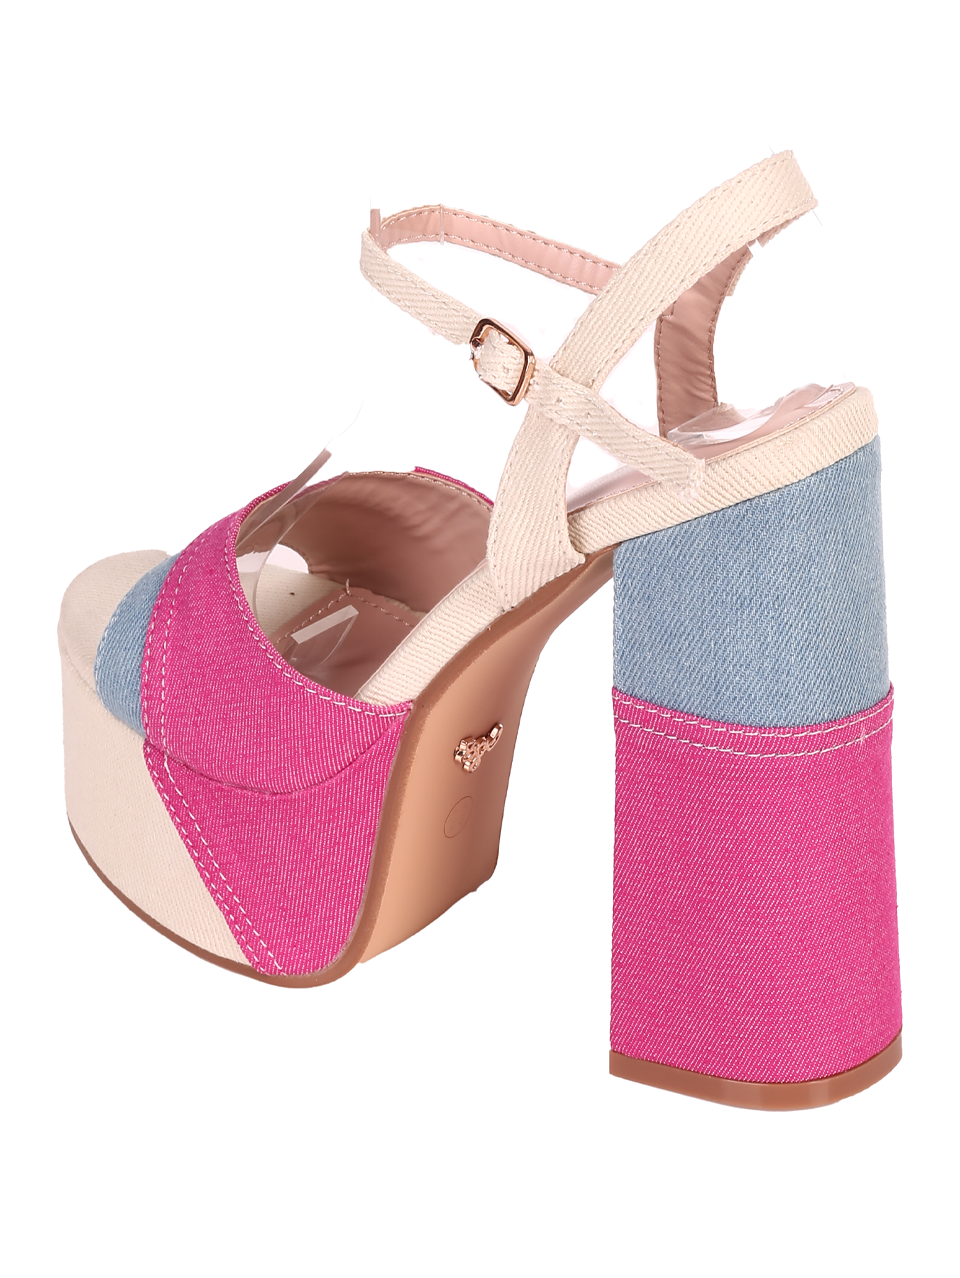 Елегантни дамски сандали в цвят фуксия 4M-24028 fuchsia